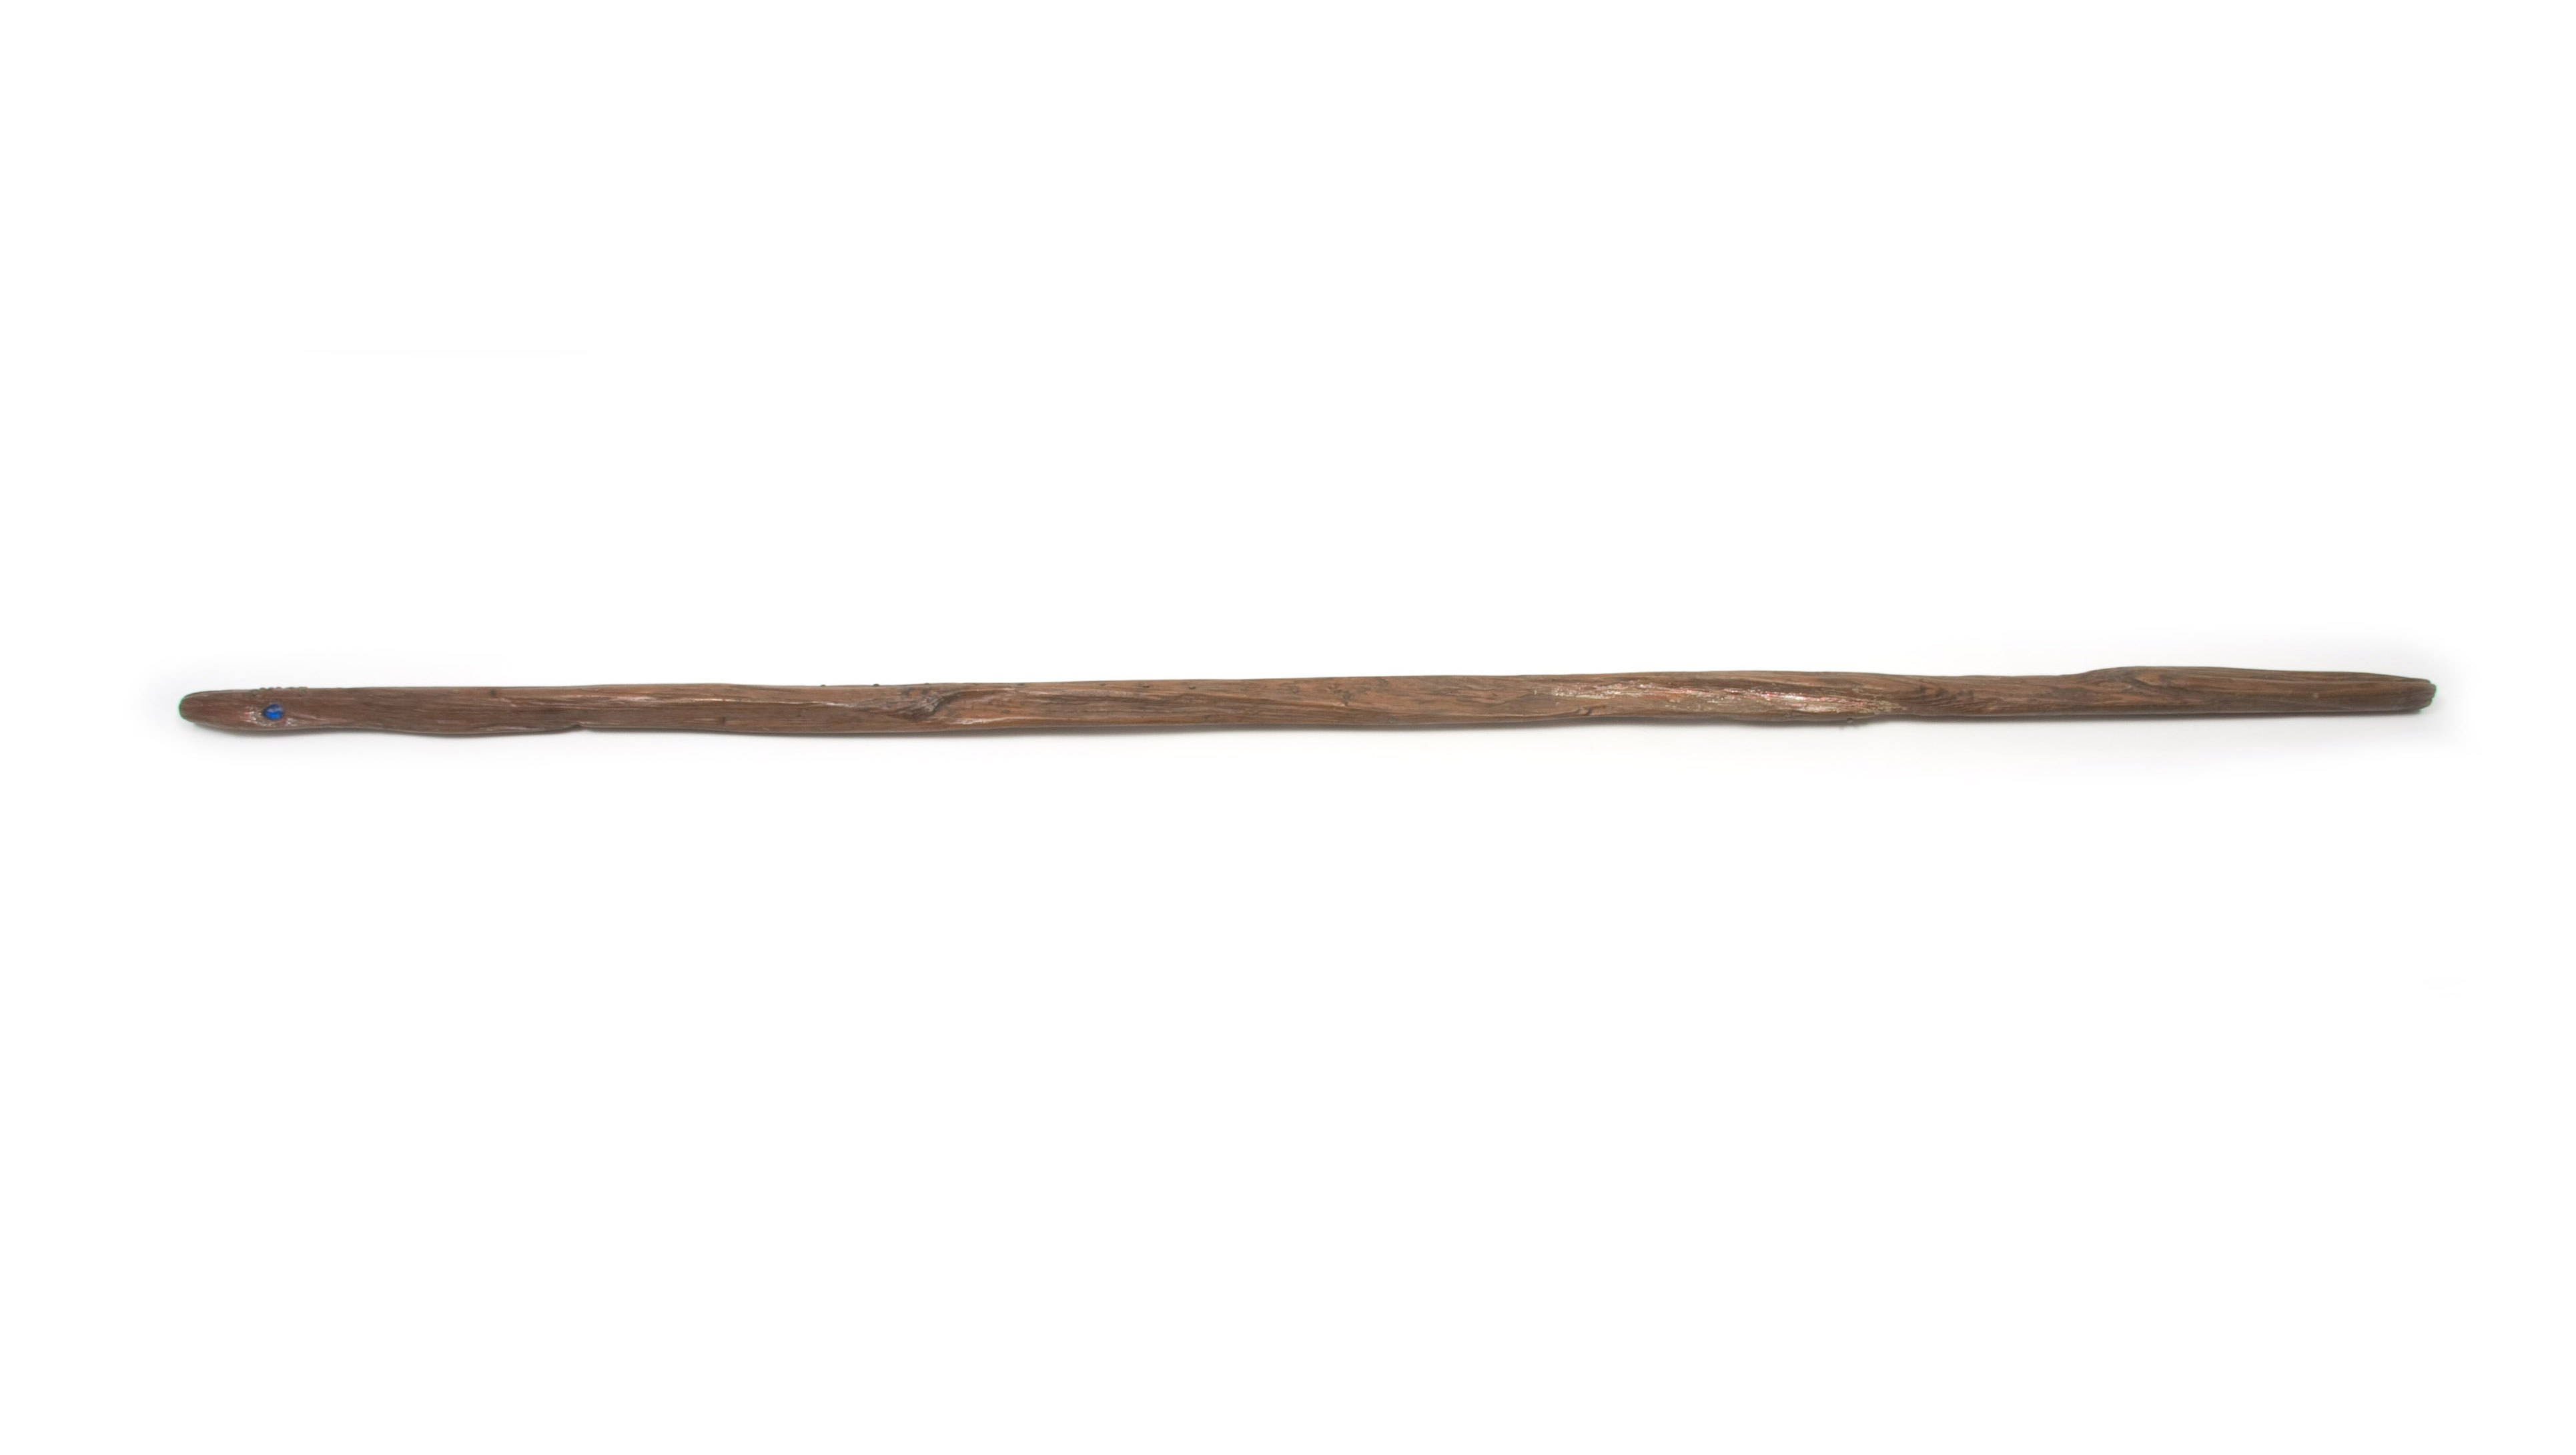 Stick pictures. Палка. Старая деревянная палка. Деревянная палка на прозрачном фоне. Длинная деревянная палка.